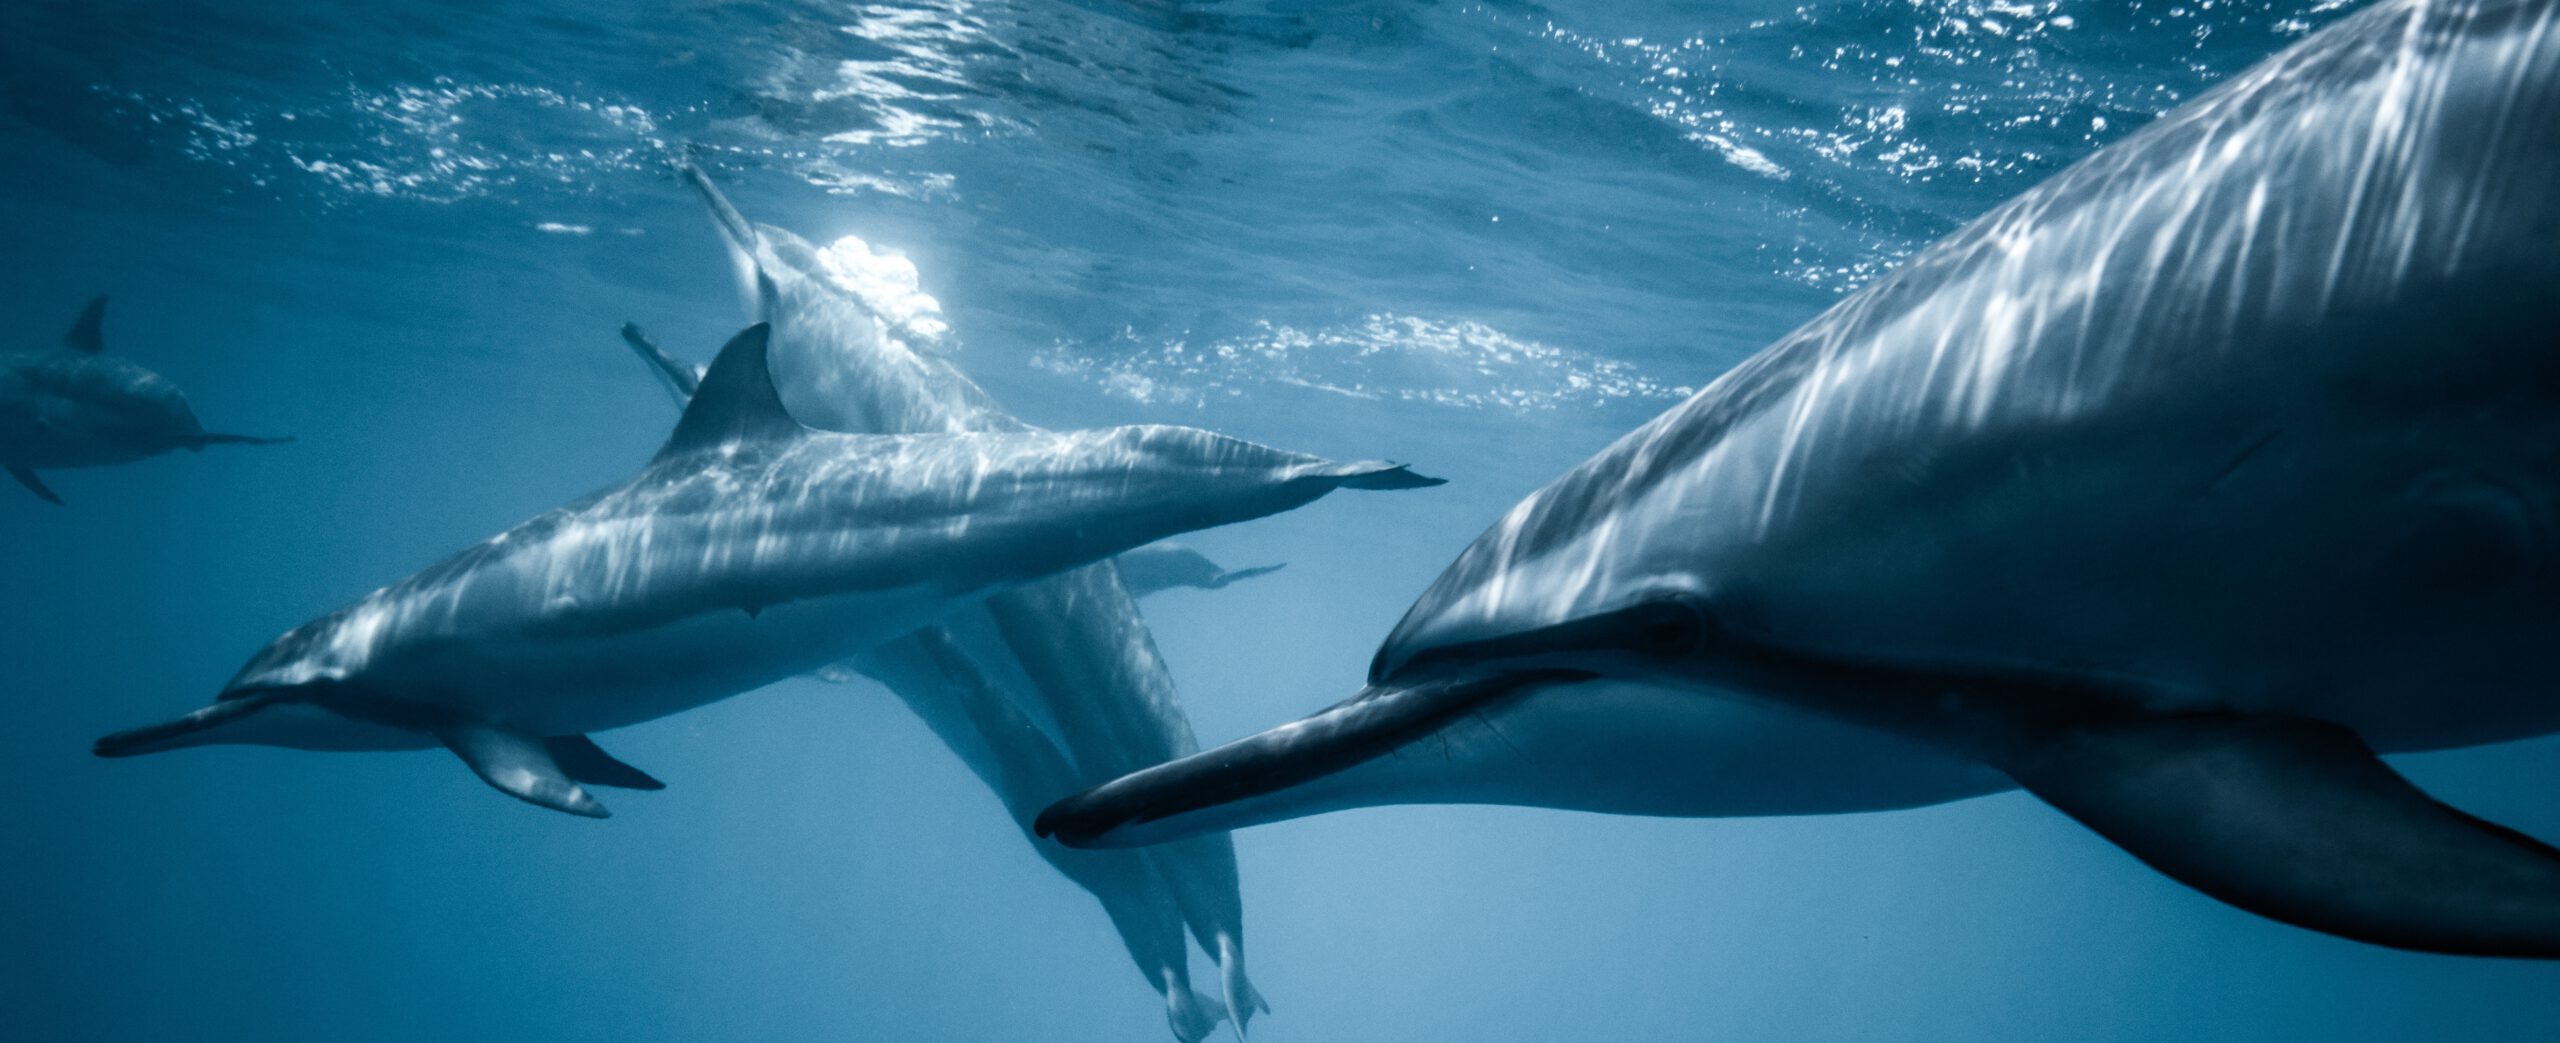 dolfijnen_spotten_lissabon